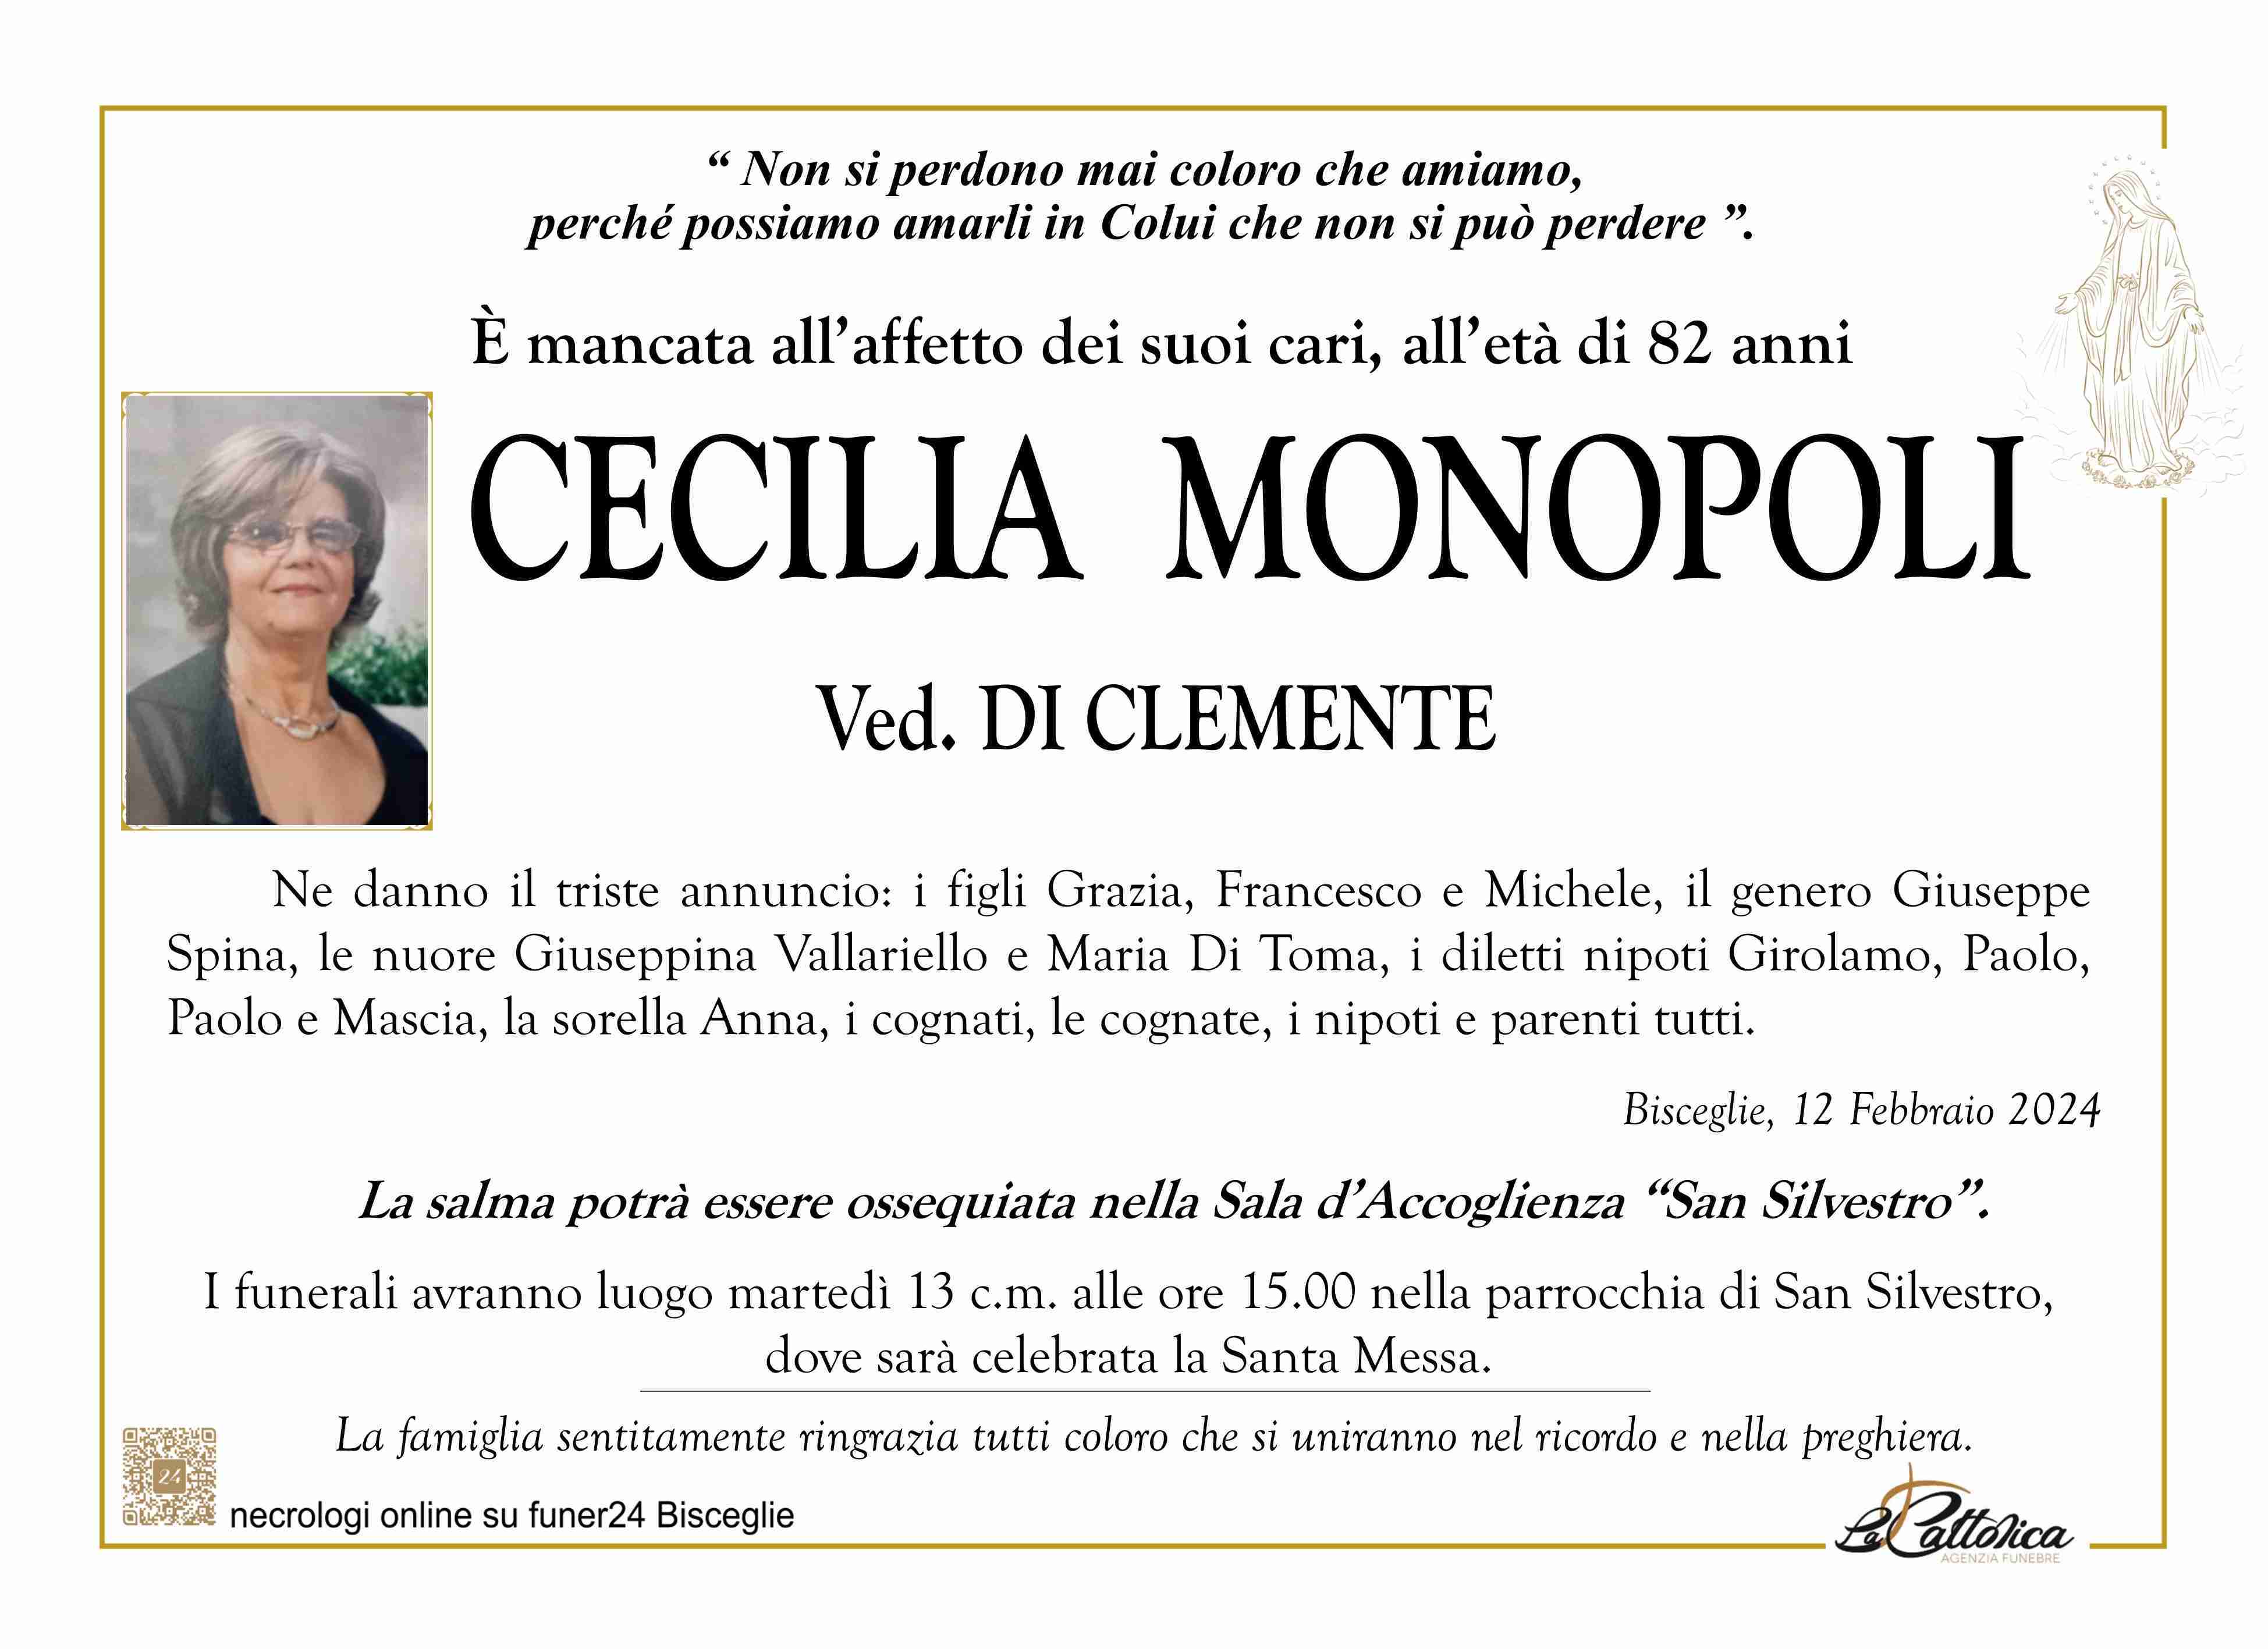 Cecilia Monopoli